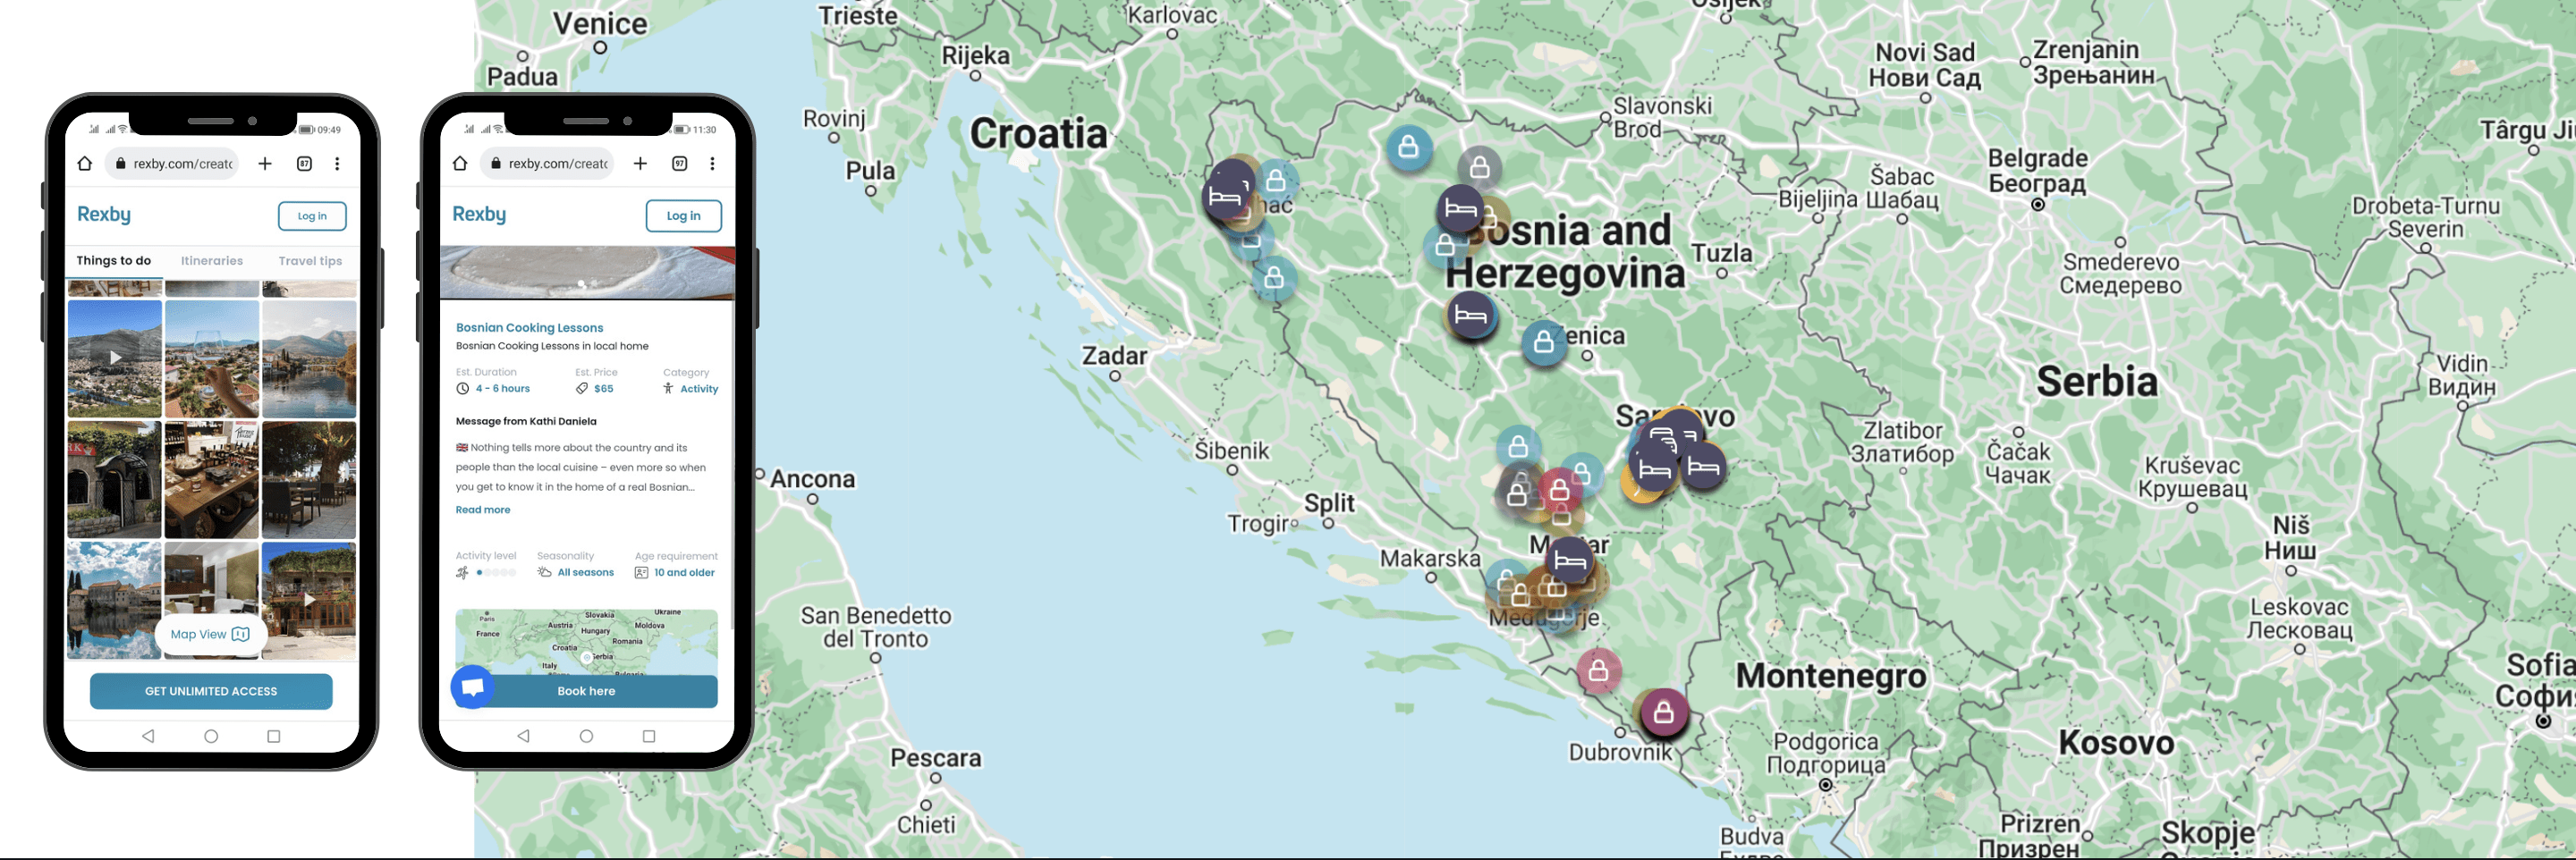 bild der karte vom bosnien reiseführer